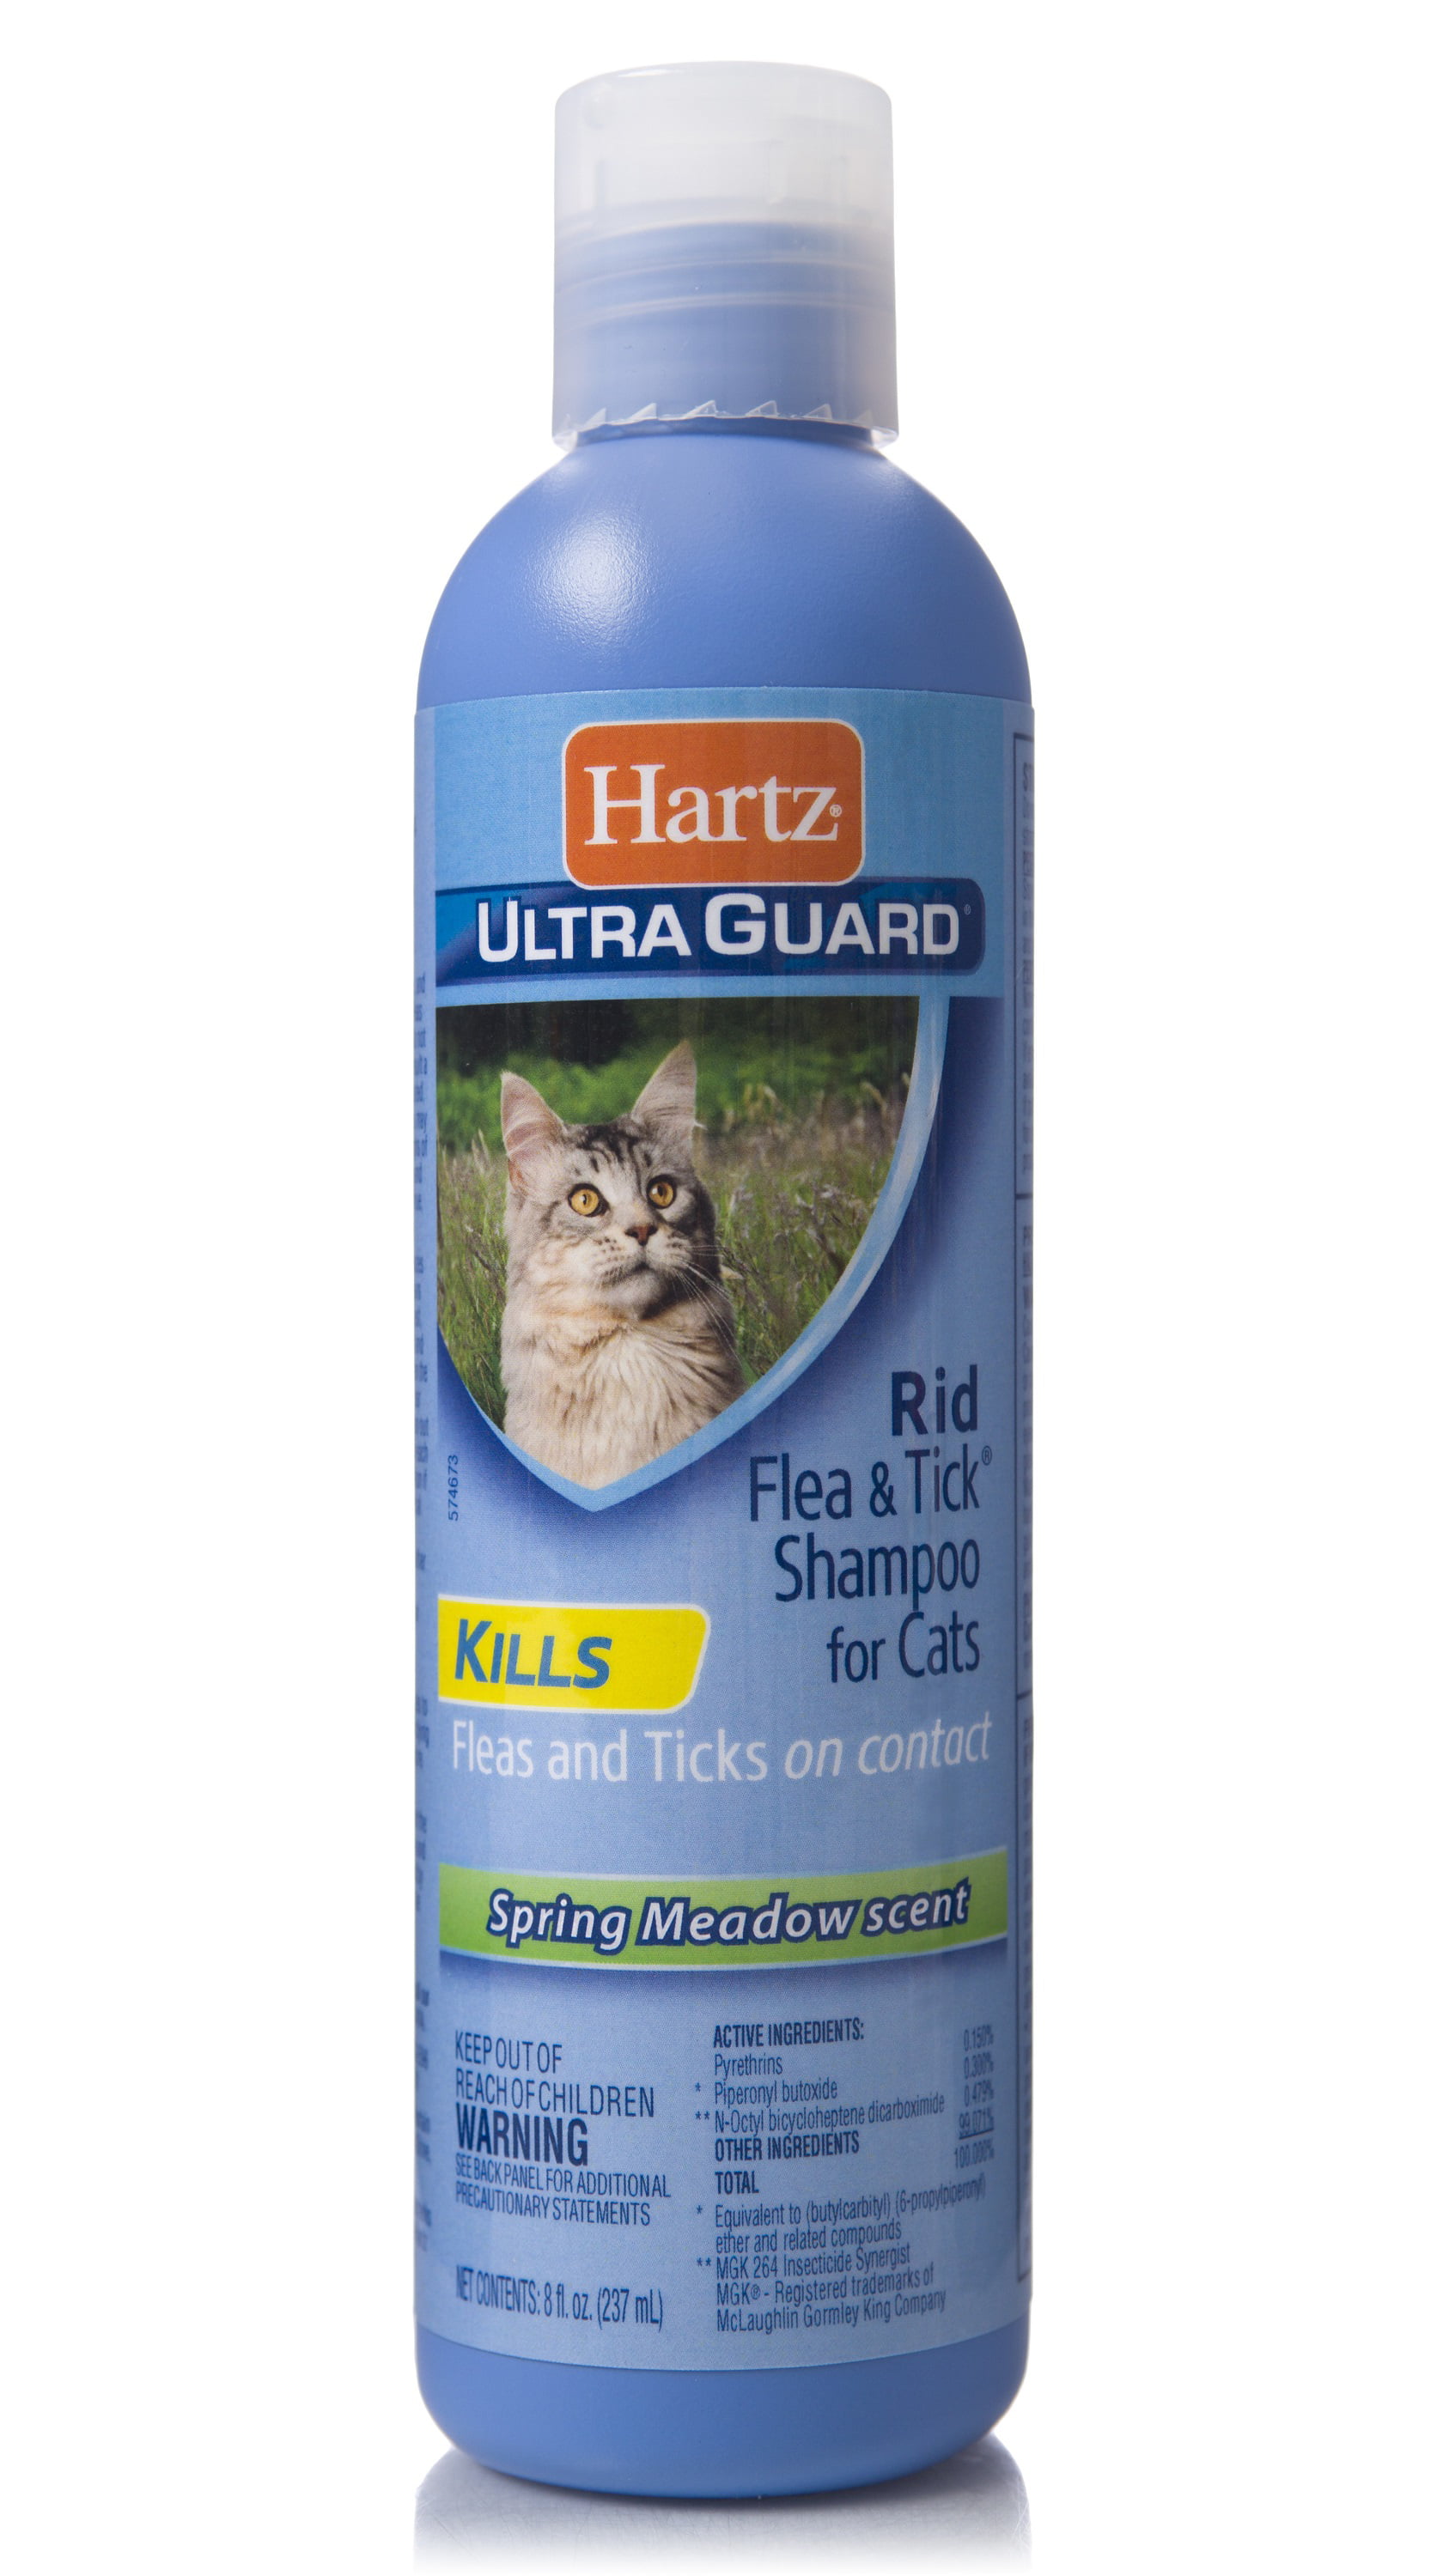 Hartz UltraGuard Rid Flea & Tick Shampoo for Cats, 8 oz.